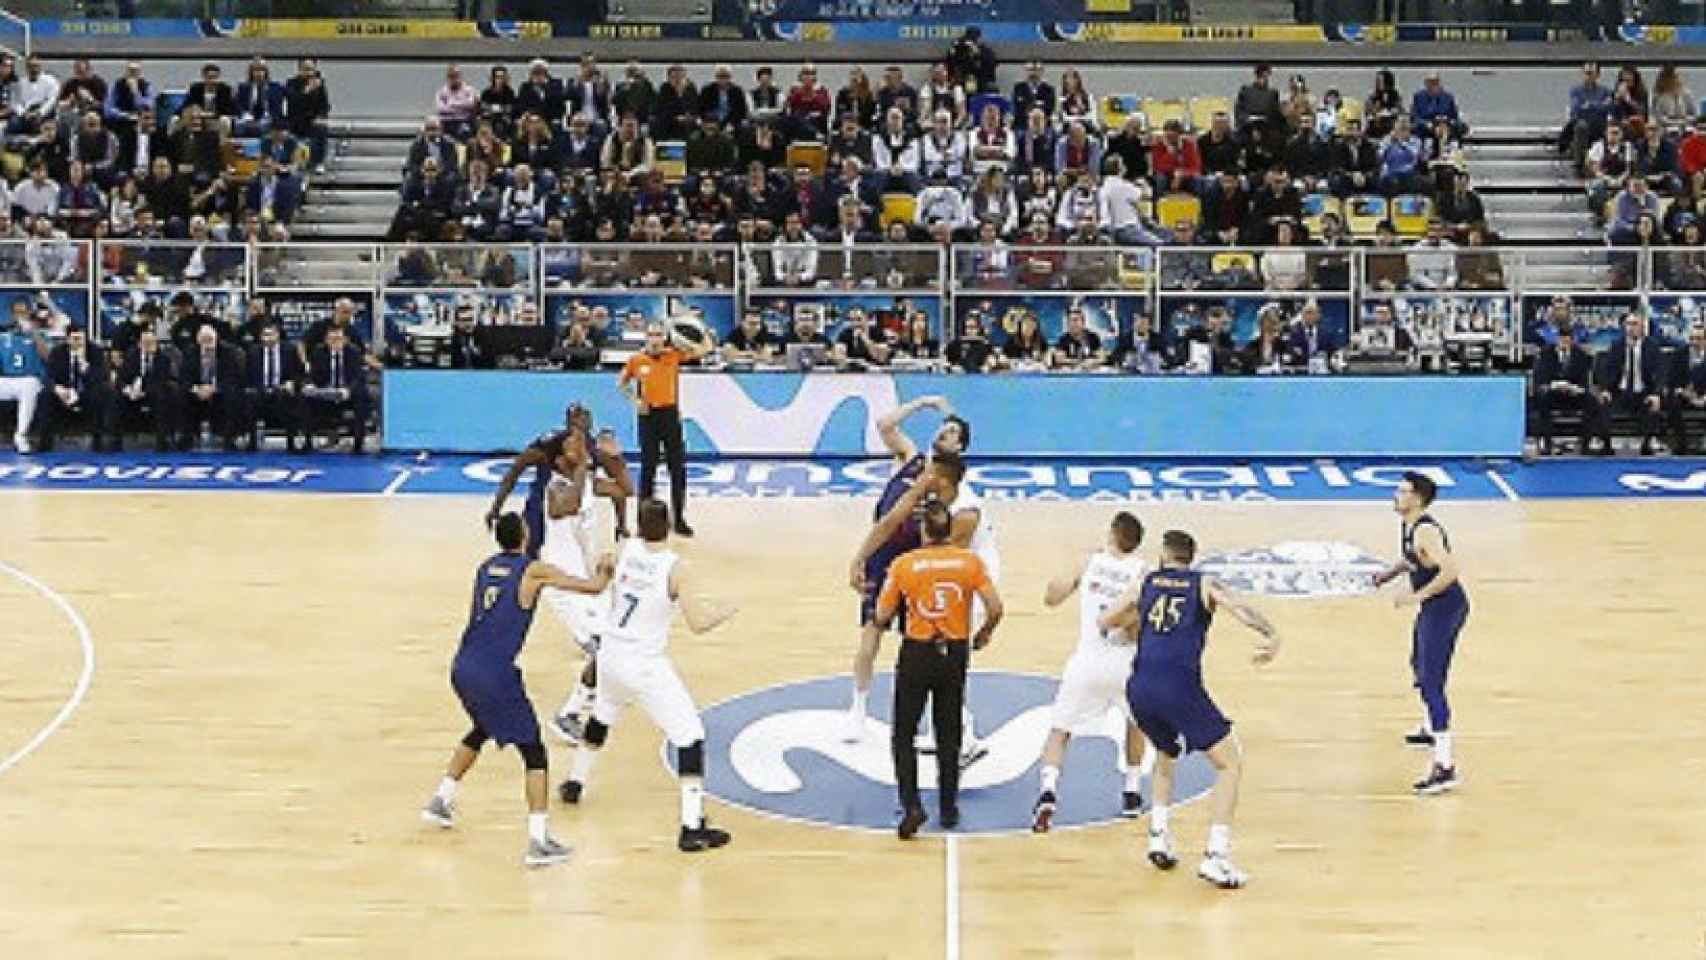 Salto inicial en el clásico de baloncesto. Imagen: (ACB.COM)